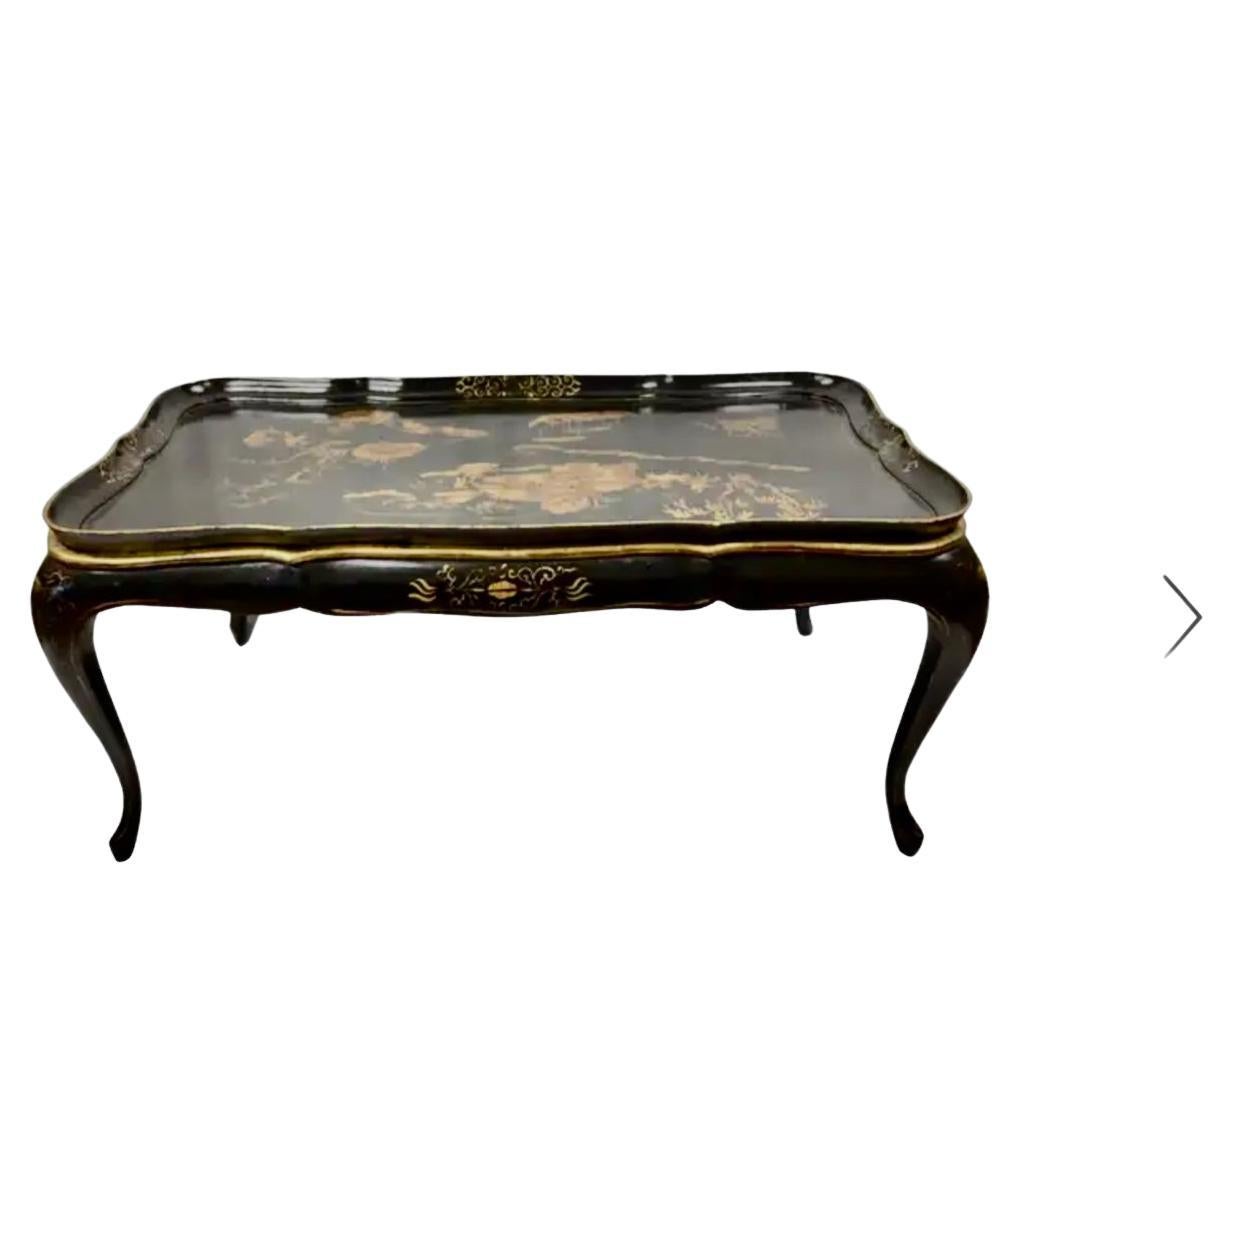 Table basse laquée de style Chinoiserie anglaise du 19e siècle avec un motif floral peint à la main. La partie supérieure présente un paysage chinois peint à la main et une scène d'eau en or sur fond noir. Le tablier en bois est orné d'un motif